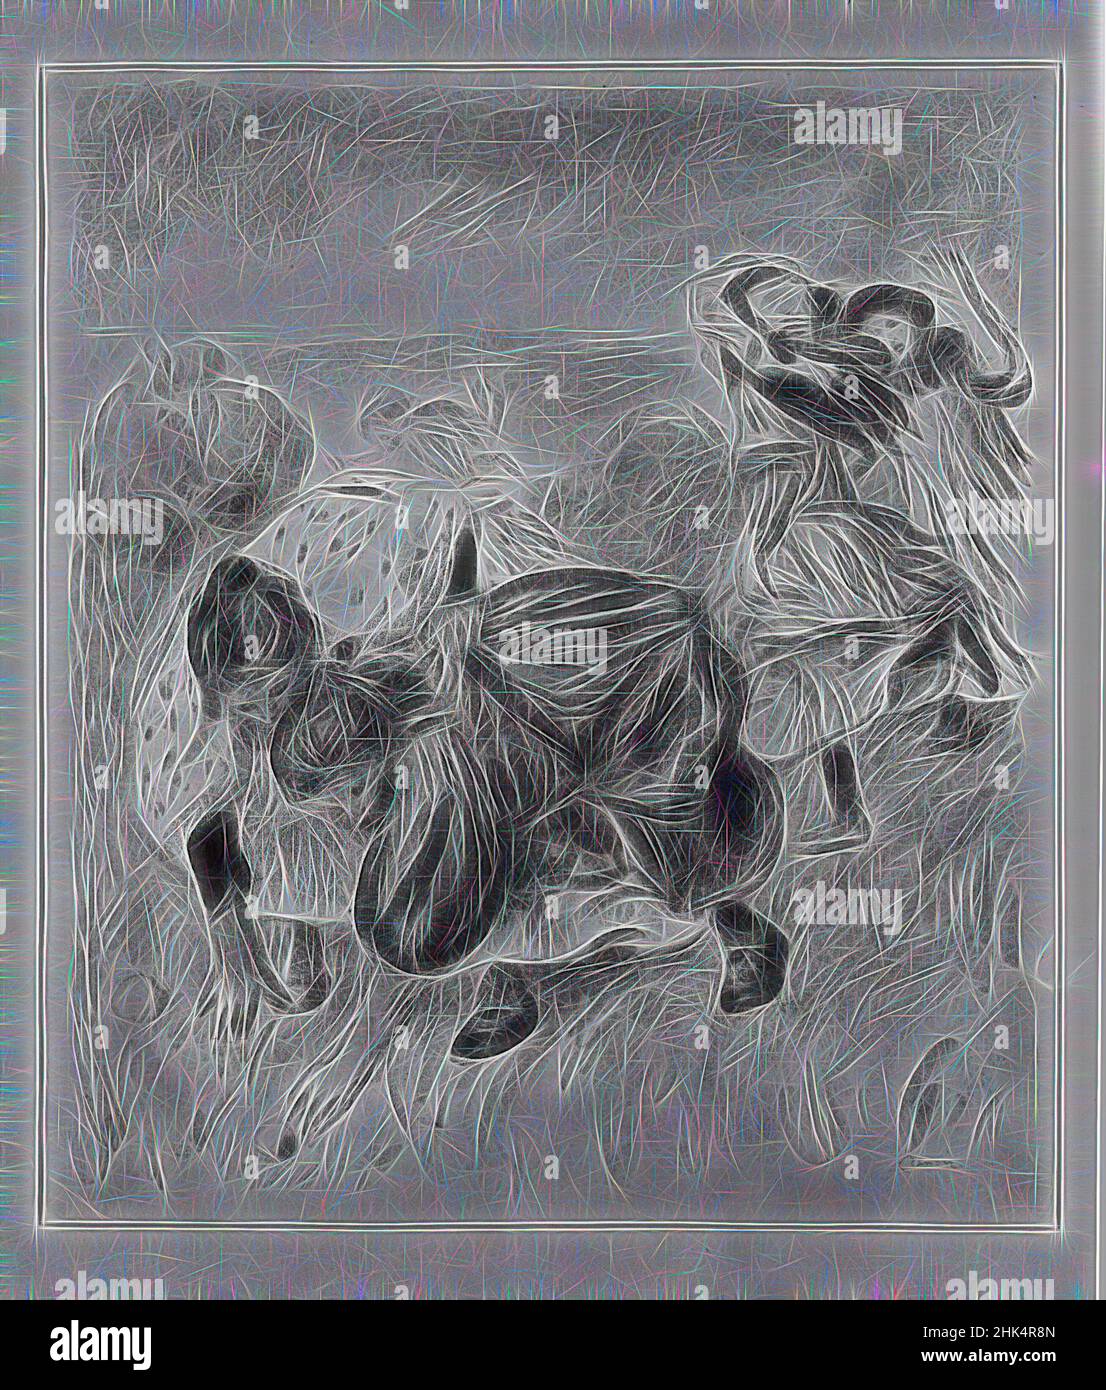 Ispirato da una palla da gioco per bambini, Enfants jouant à la balle, Pierre-Auguste Renoir, francese, 1841-1919, litografia su carta stampata, Francia, ca. 1900, 23 5/8 x 20 1/16 pollici, 60 x 51 cm, reinventato da Artotop. L'arte classica reinventata con un tocco moderno. Design di calda e allegra luminosità e di raggi di luce. La fotografia si ispira al surrealismo e al futurismo, abbracciando l'energia dinamica della tecnologia moderna, del movimento, della velocità e rivoluzionando la cultura Foto Stock